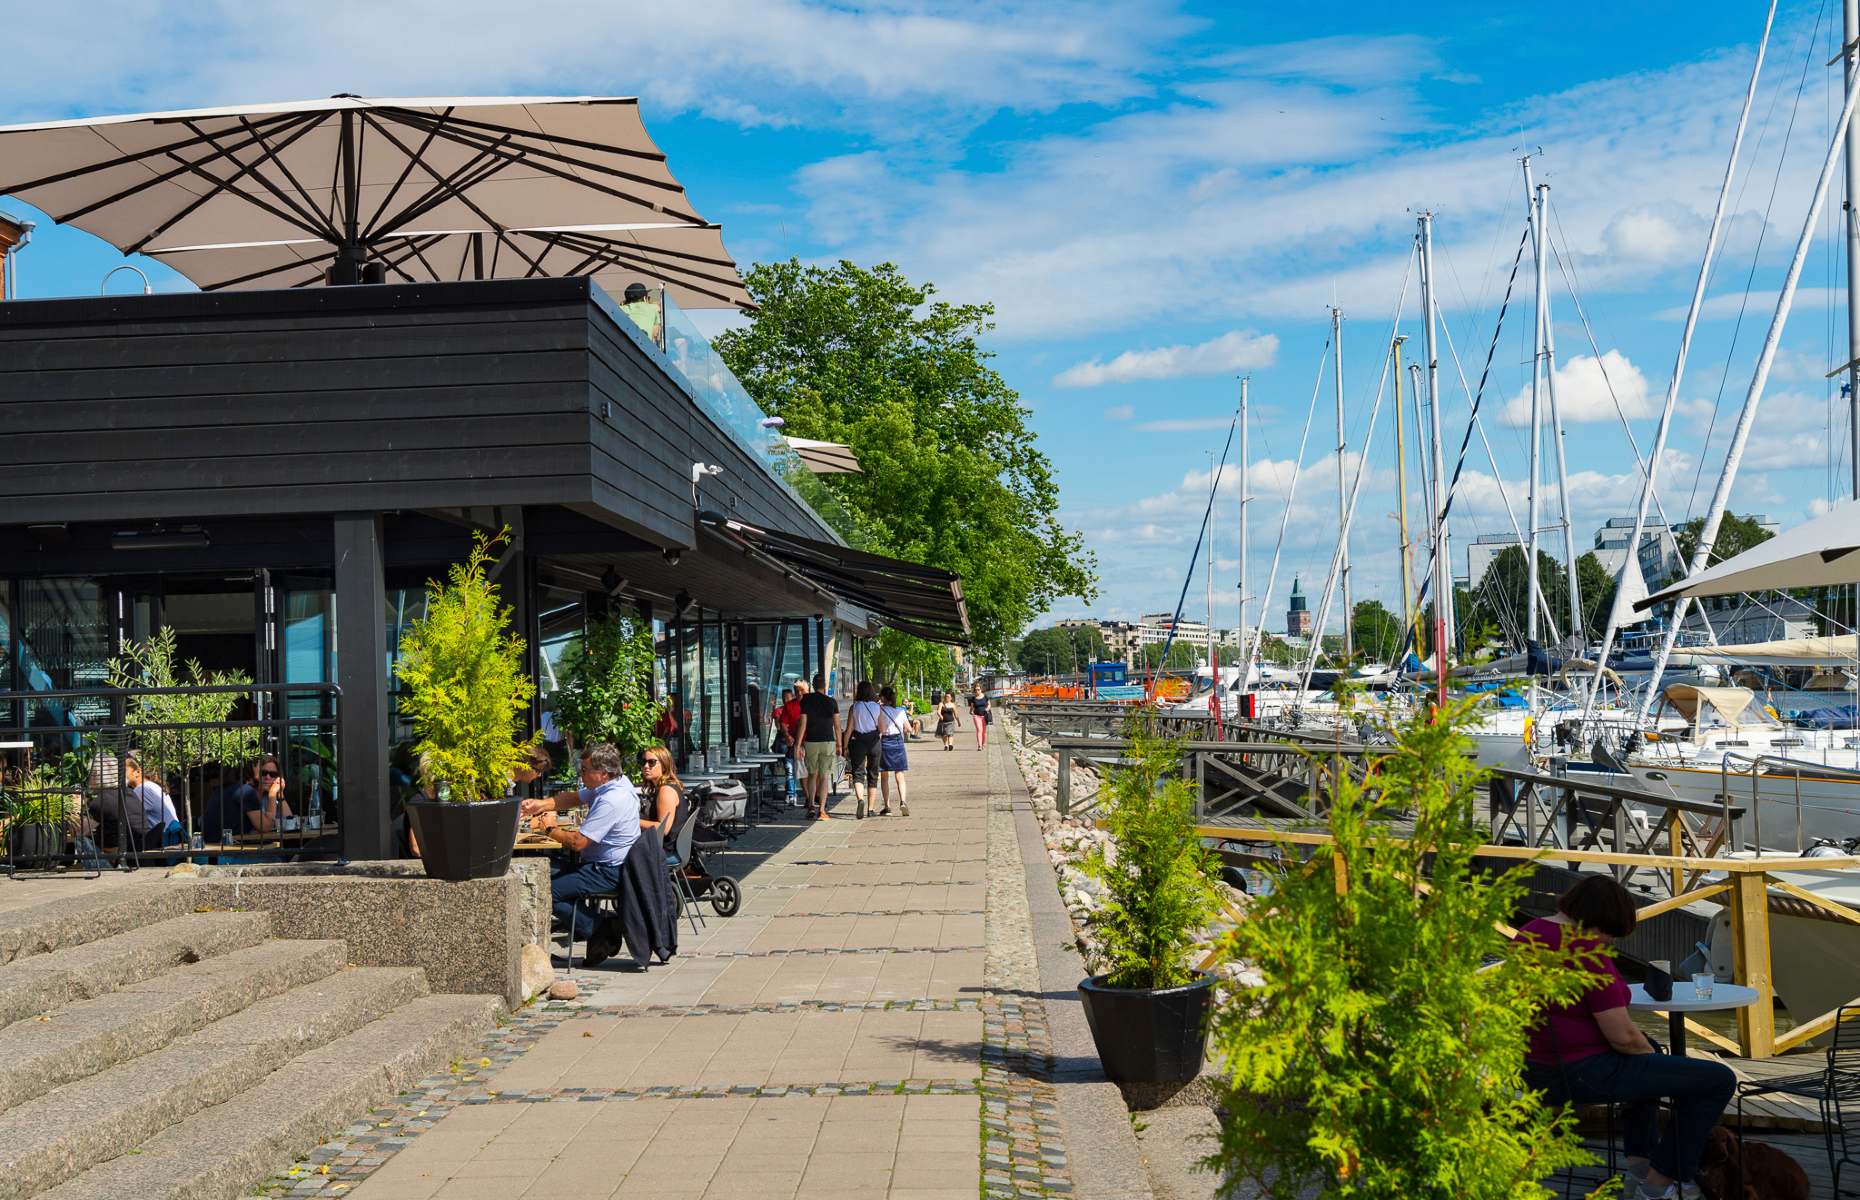 NOOA restaurant in Turku (Image: Courtesy of Visit Turku)